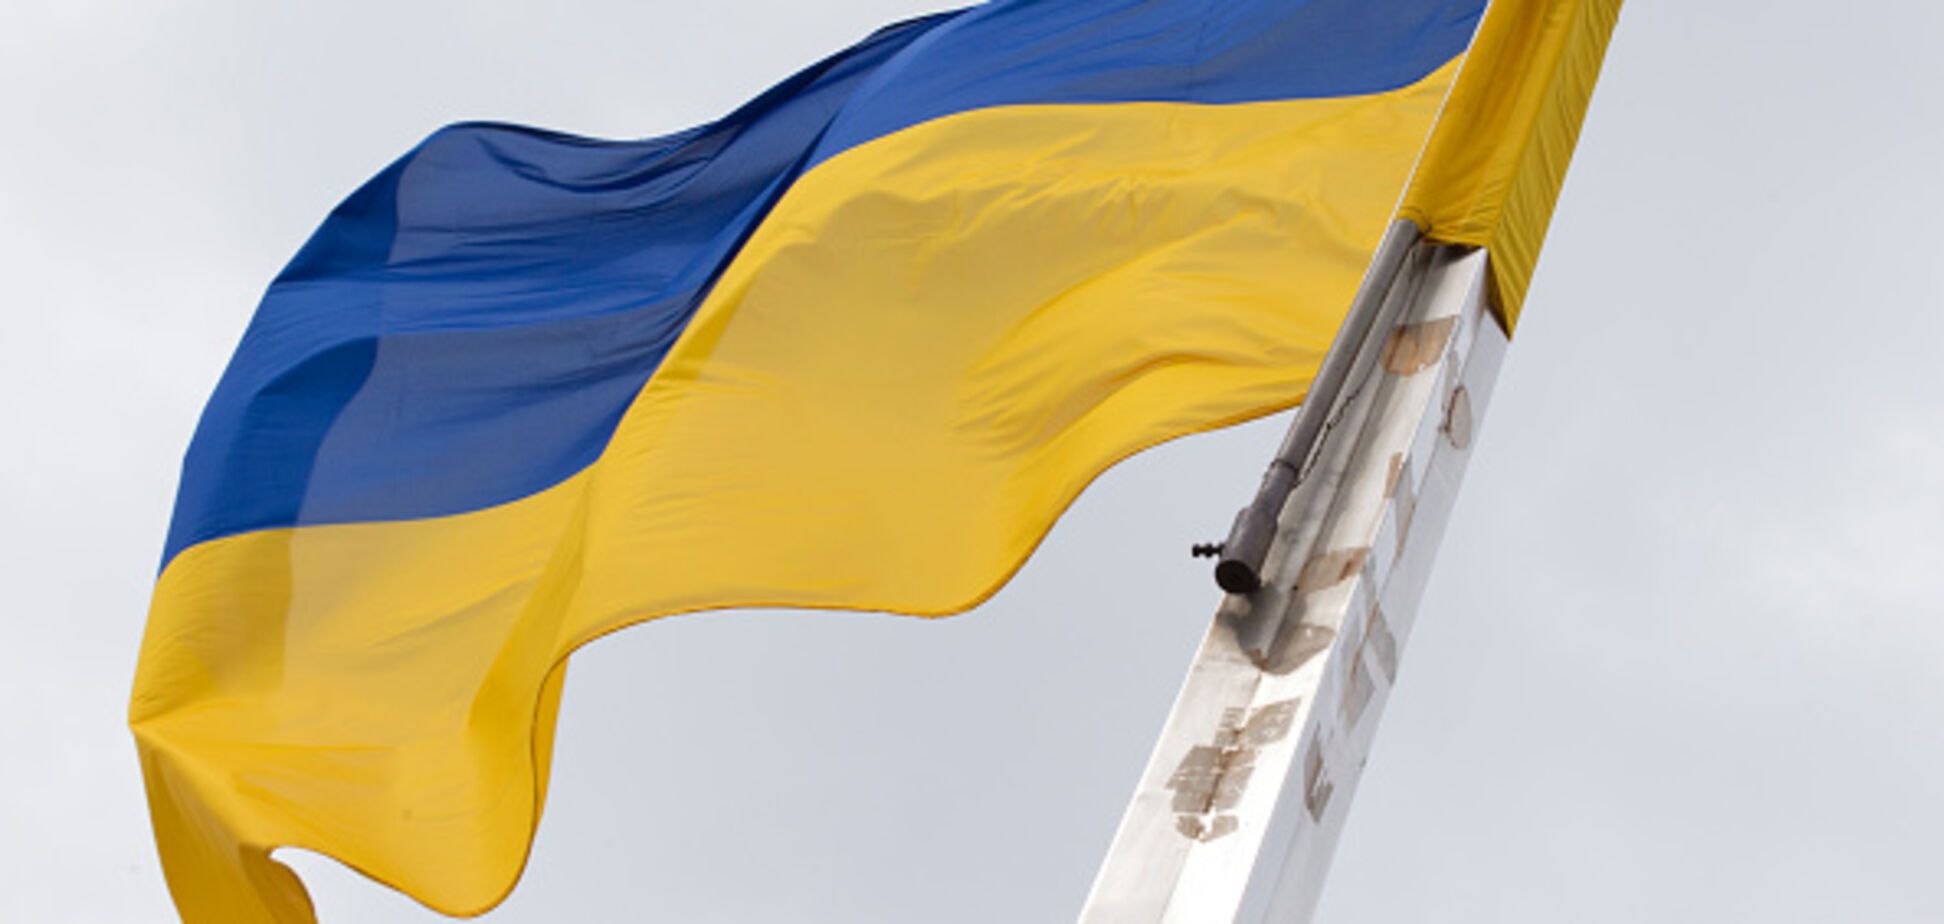 Перенесення переговорів щодо України в Казахстан: озвучені важливі умови